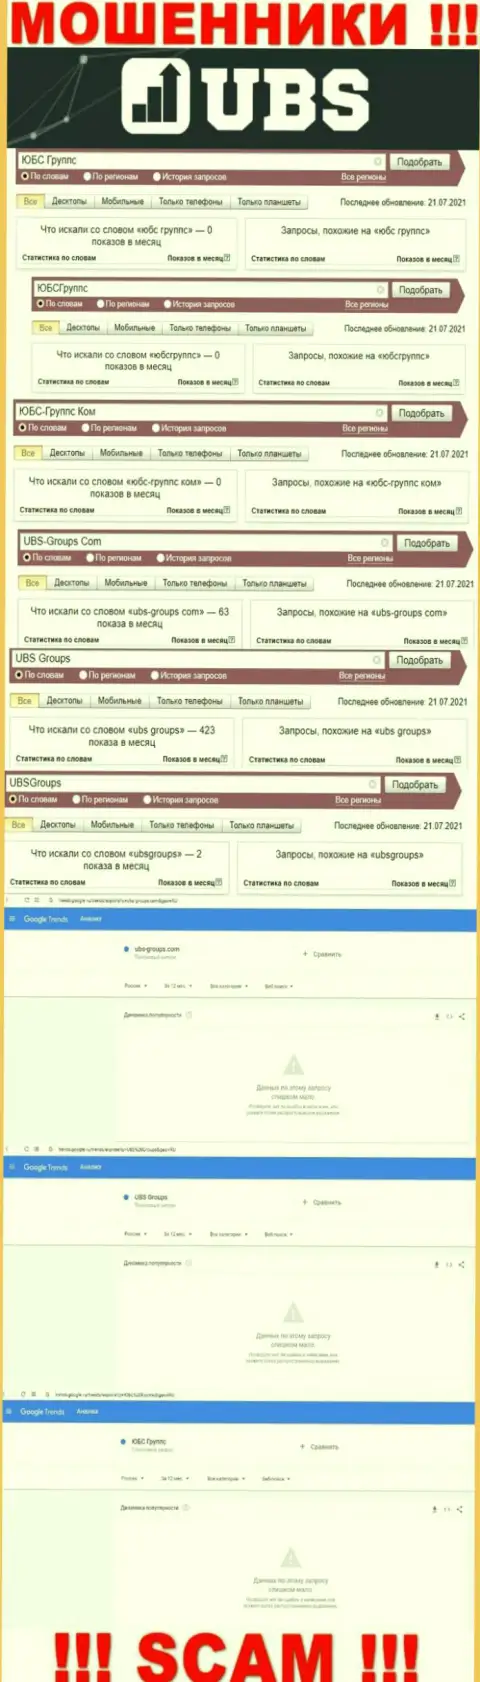 Скриншот результата поисковых запросов по противозаконно действующей компании UBS Groups